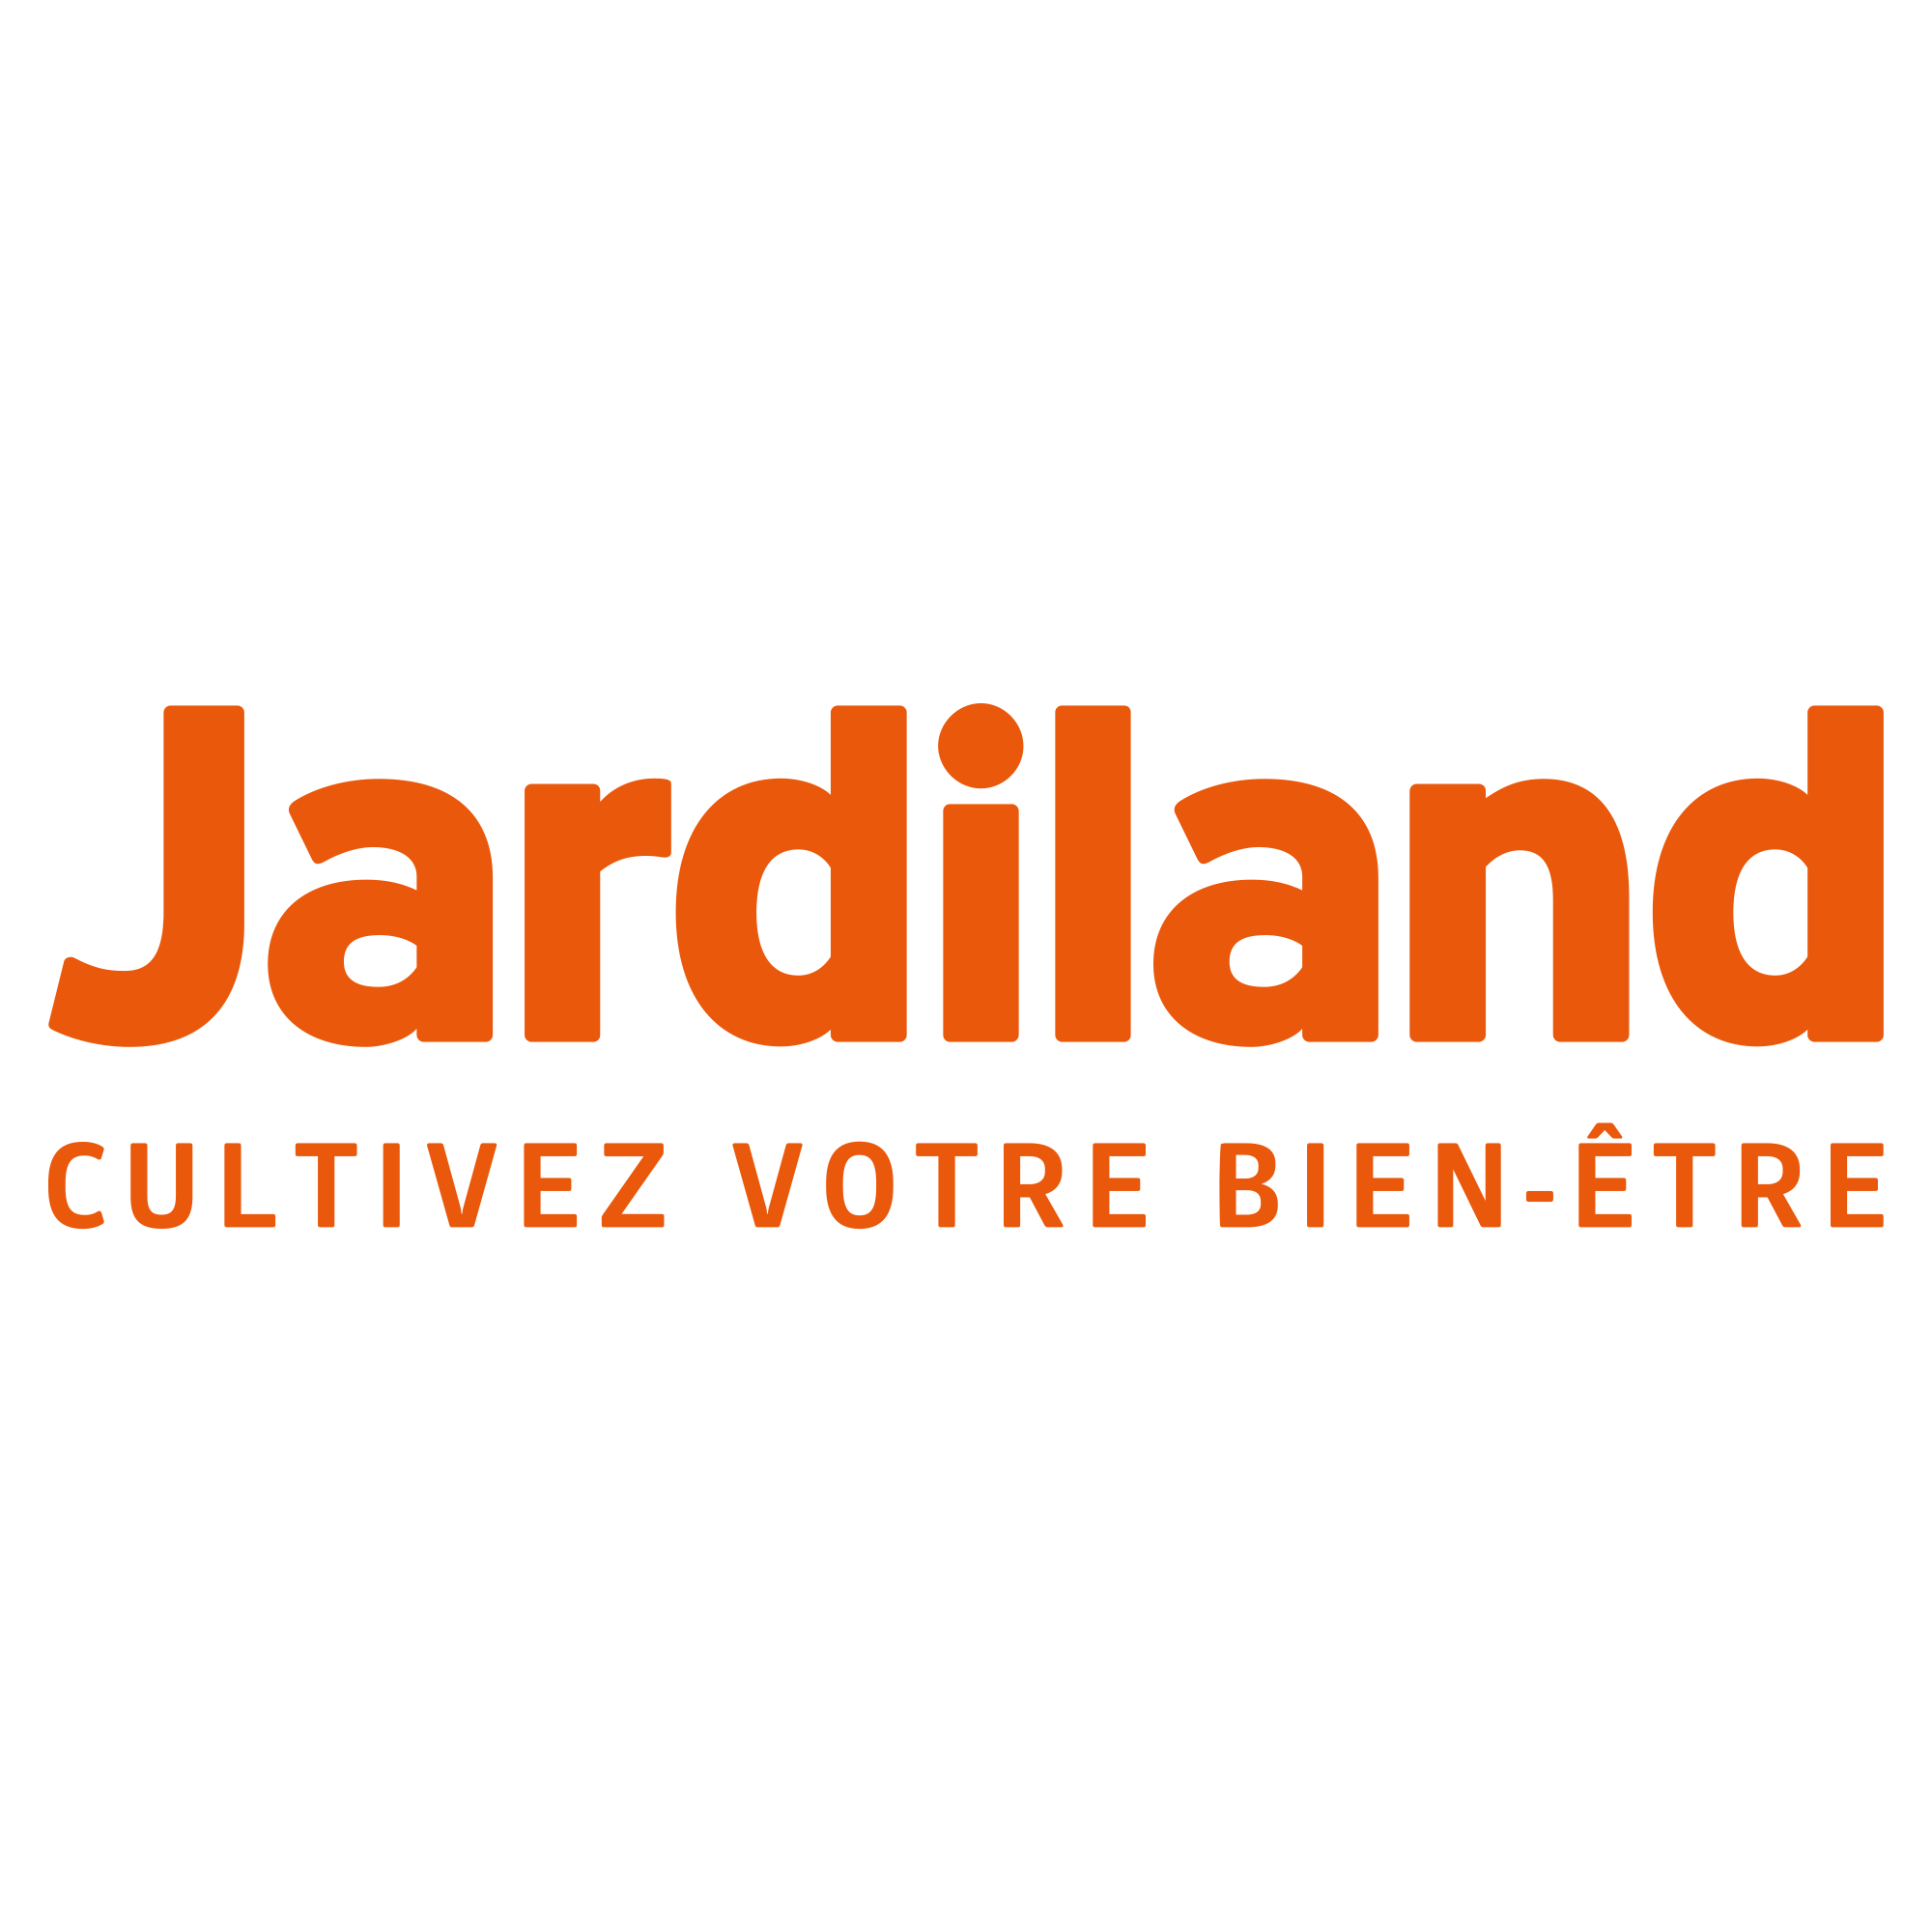 Bons Plans Jardiland Deals Pour Janvier 2020 Dealabscom